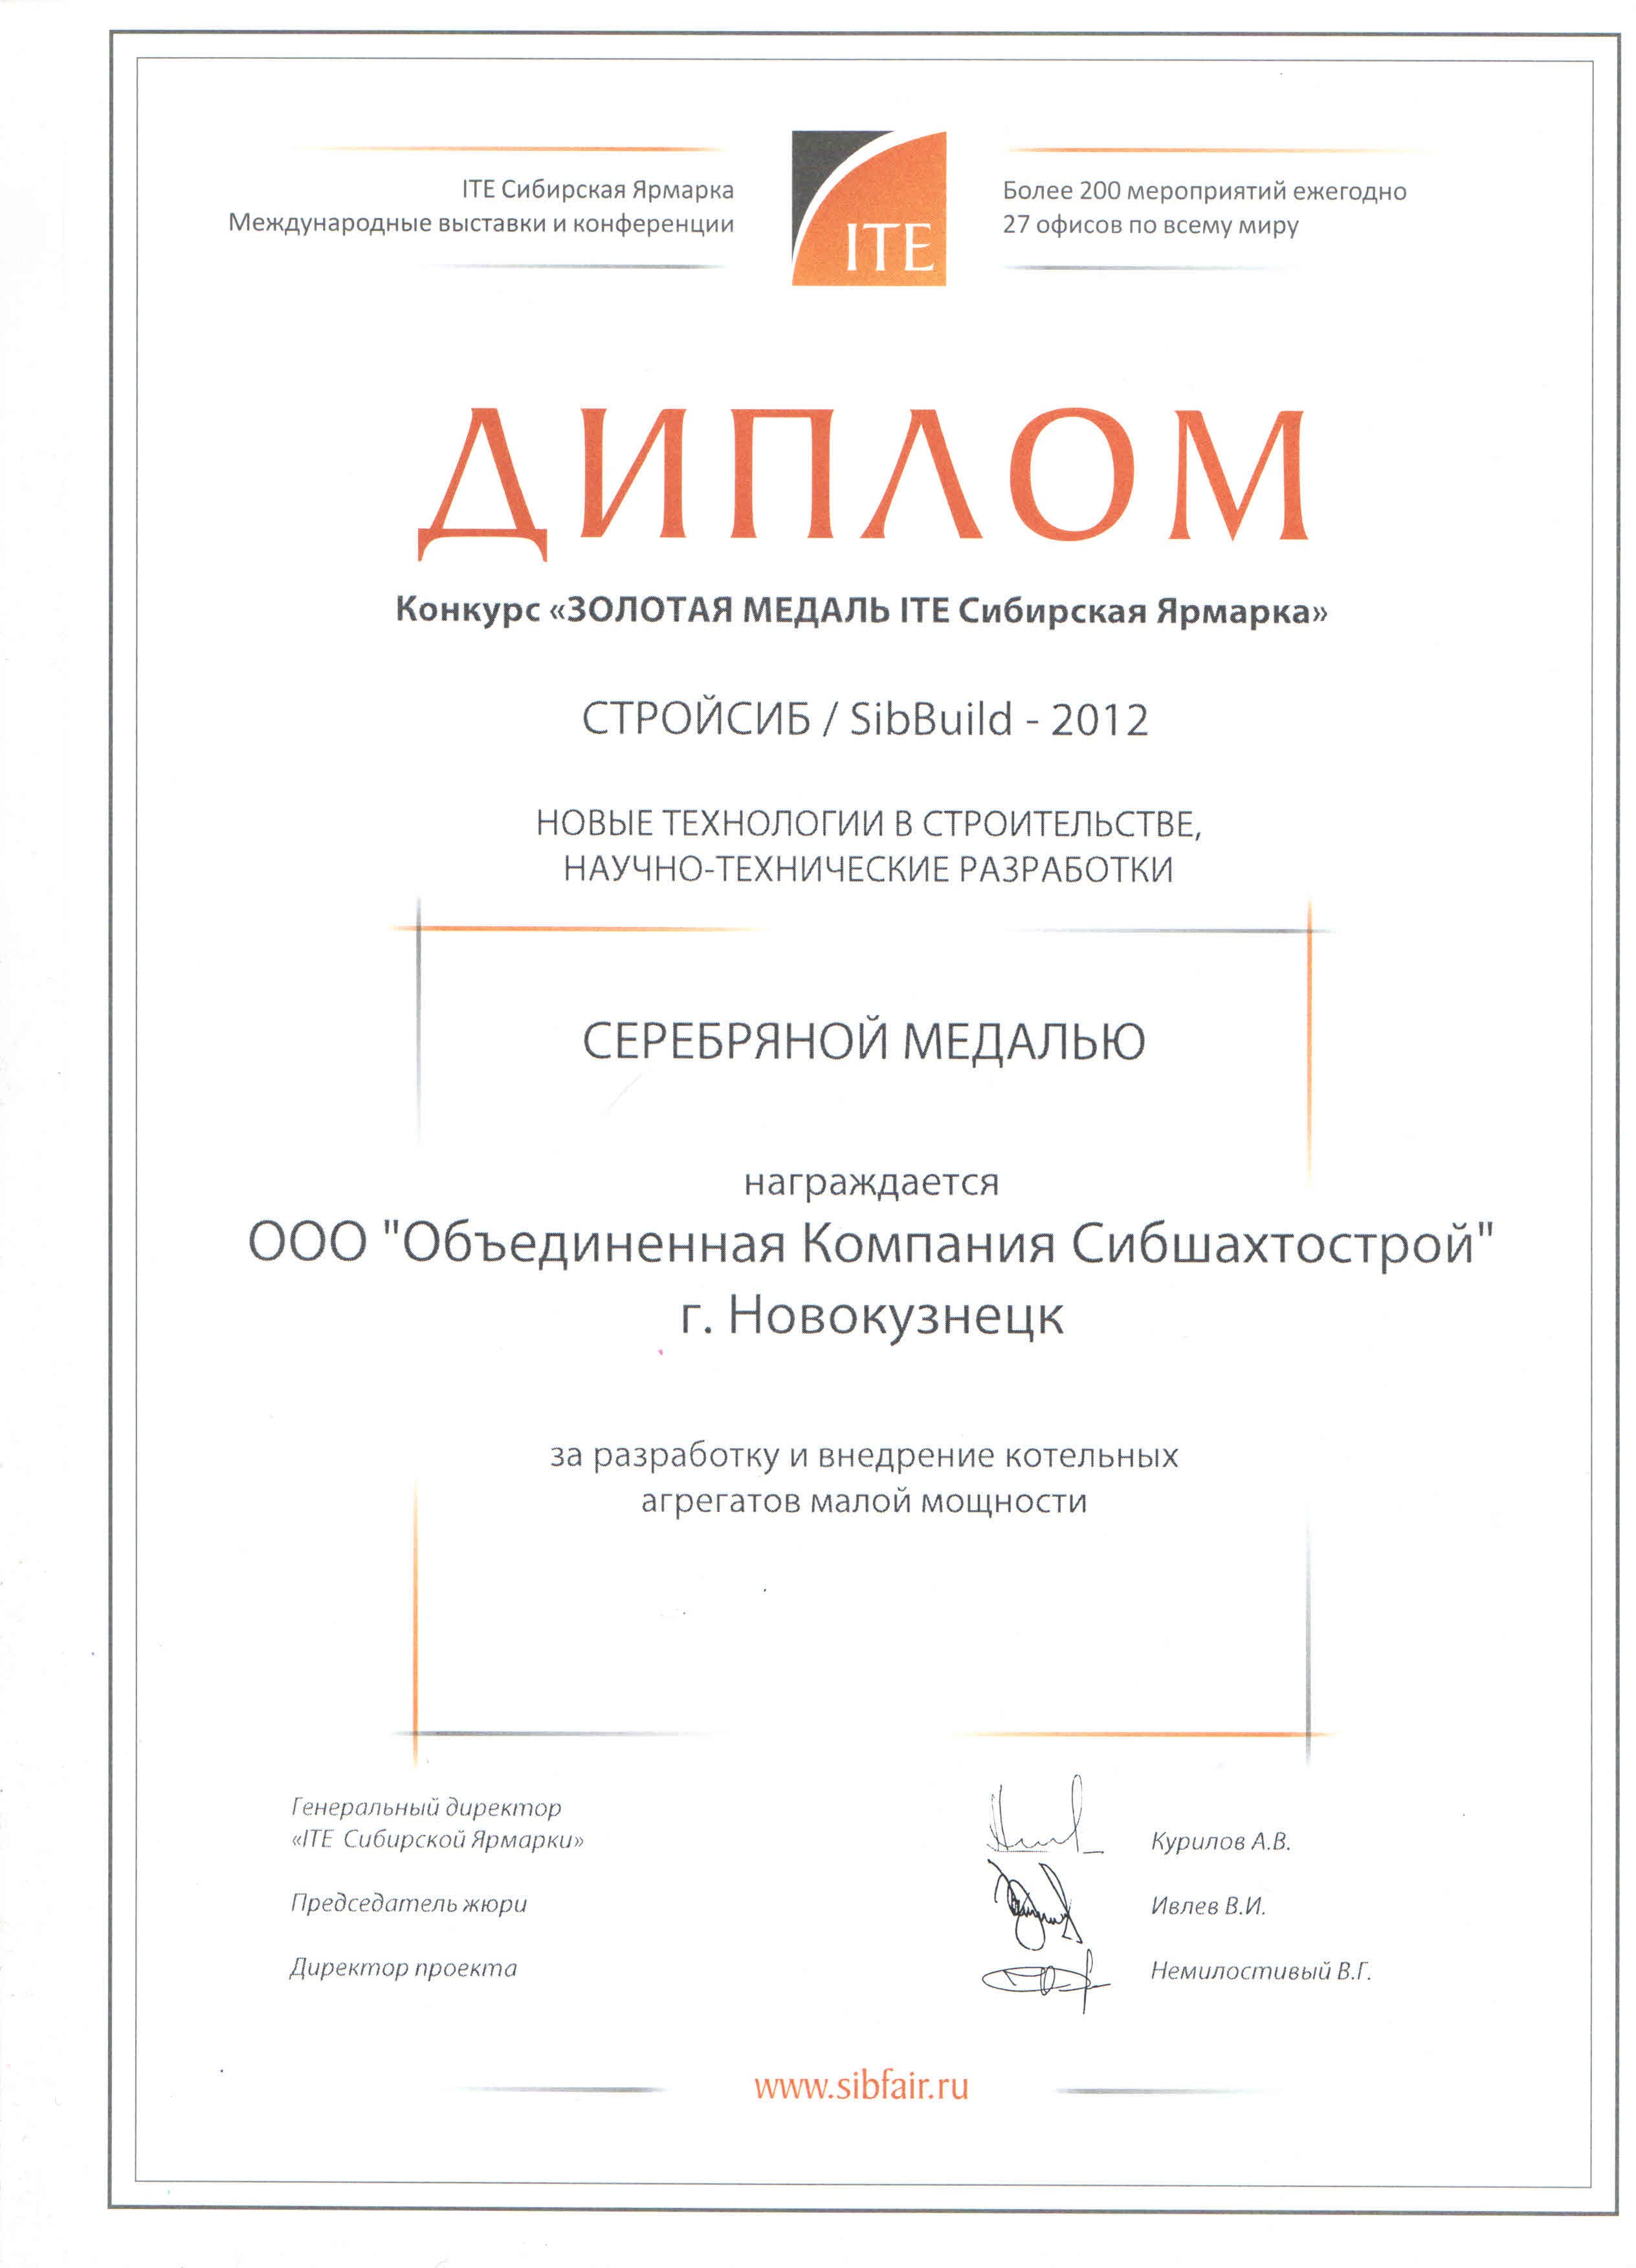 Медаль выставки "Стройсиб-2012"